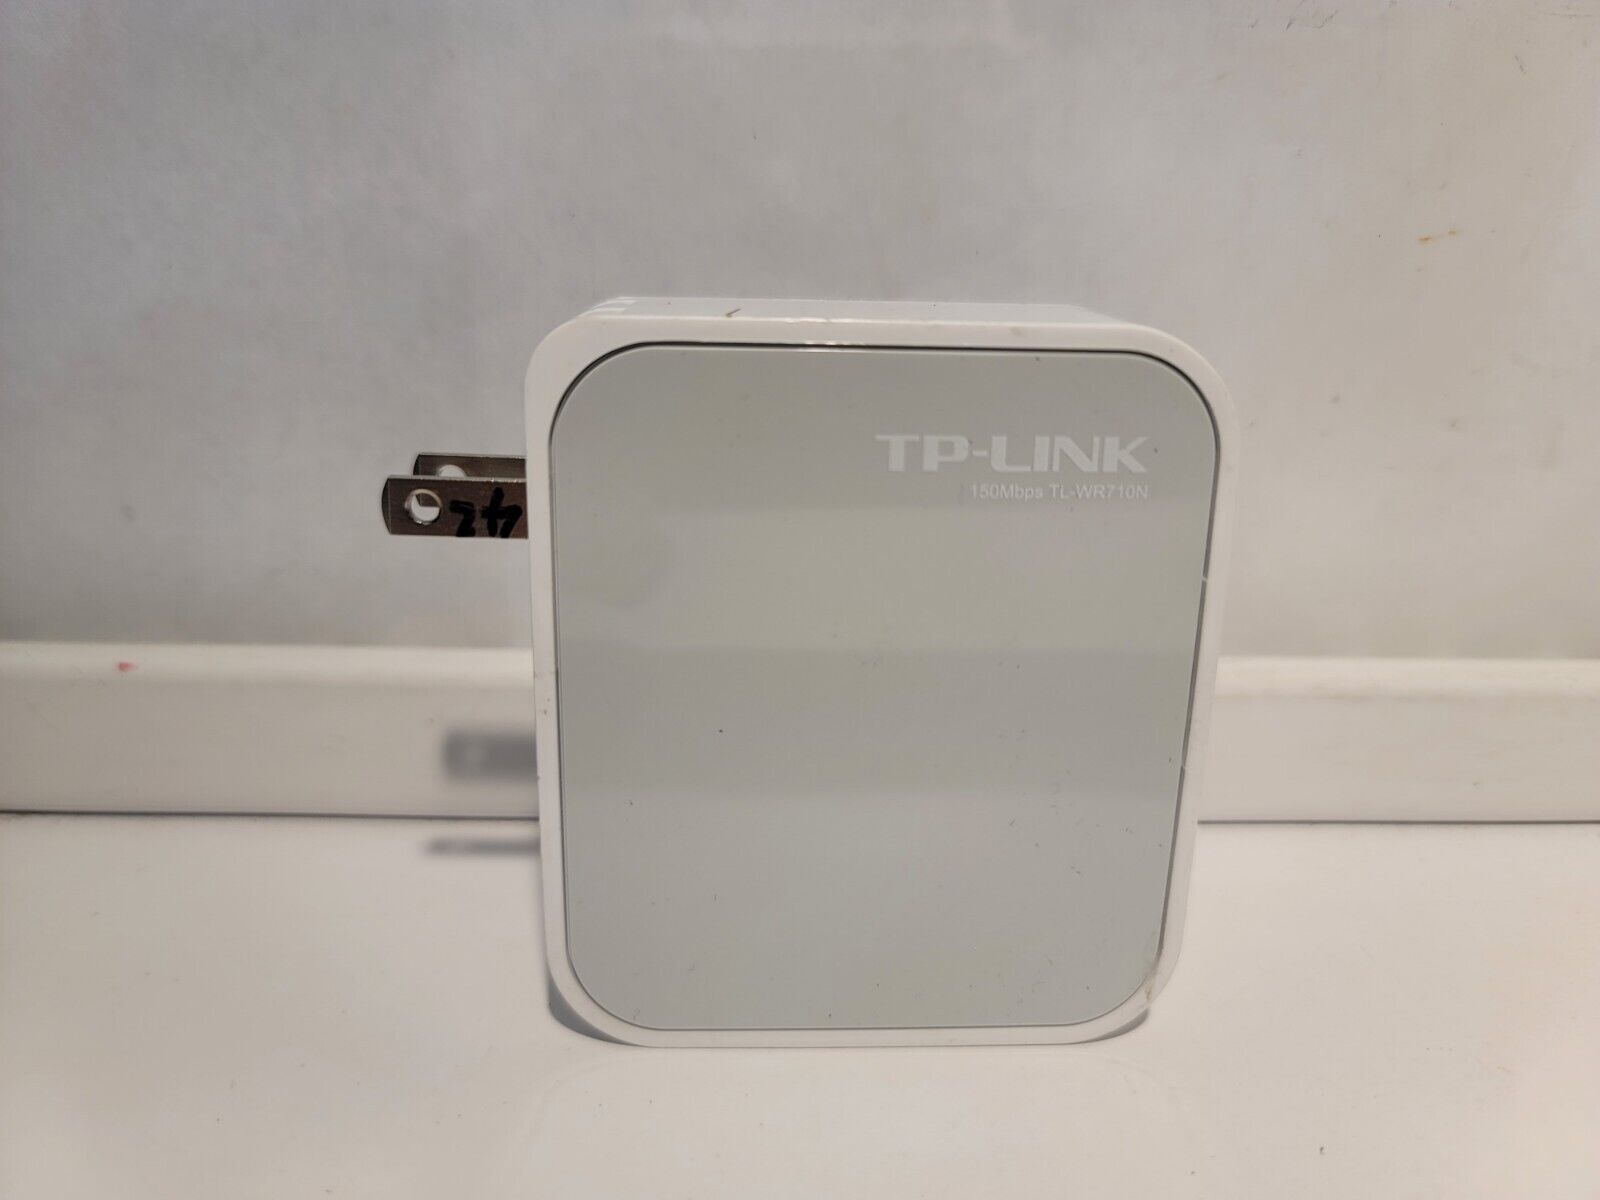 TP-Link TL-WR700N 150 Mbps 1-Port 10/100 Wireless N Pocket Router